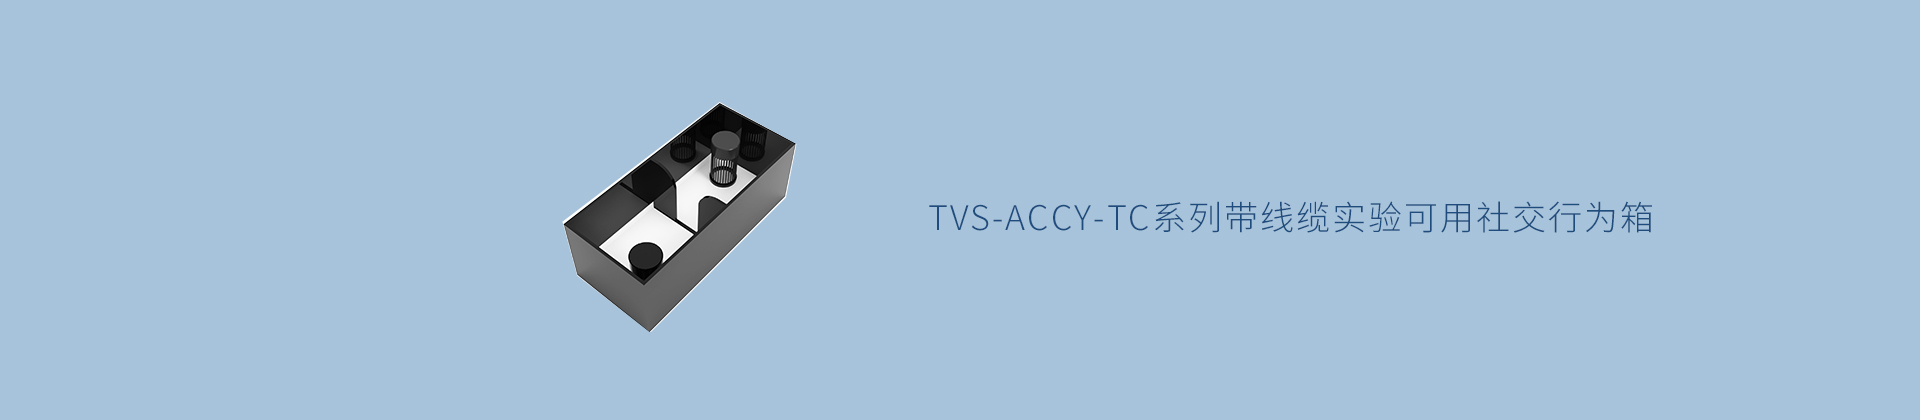 TVS-ACCY-TC系列带线缆实验可用社交行为箱